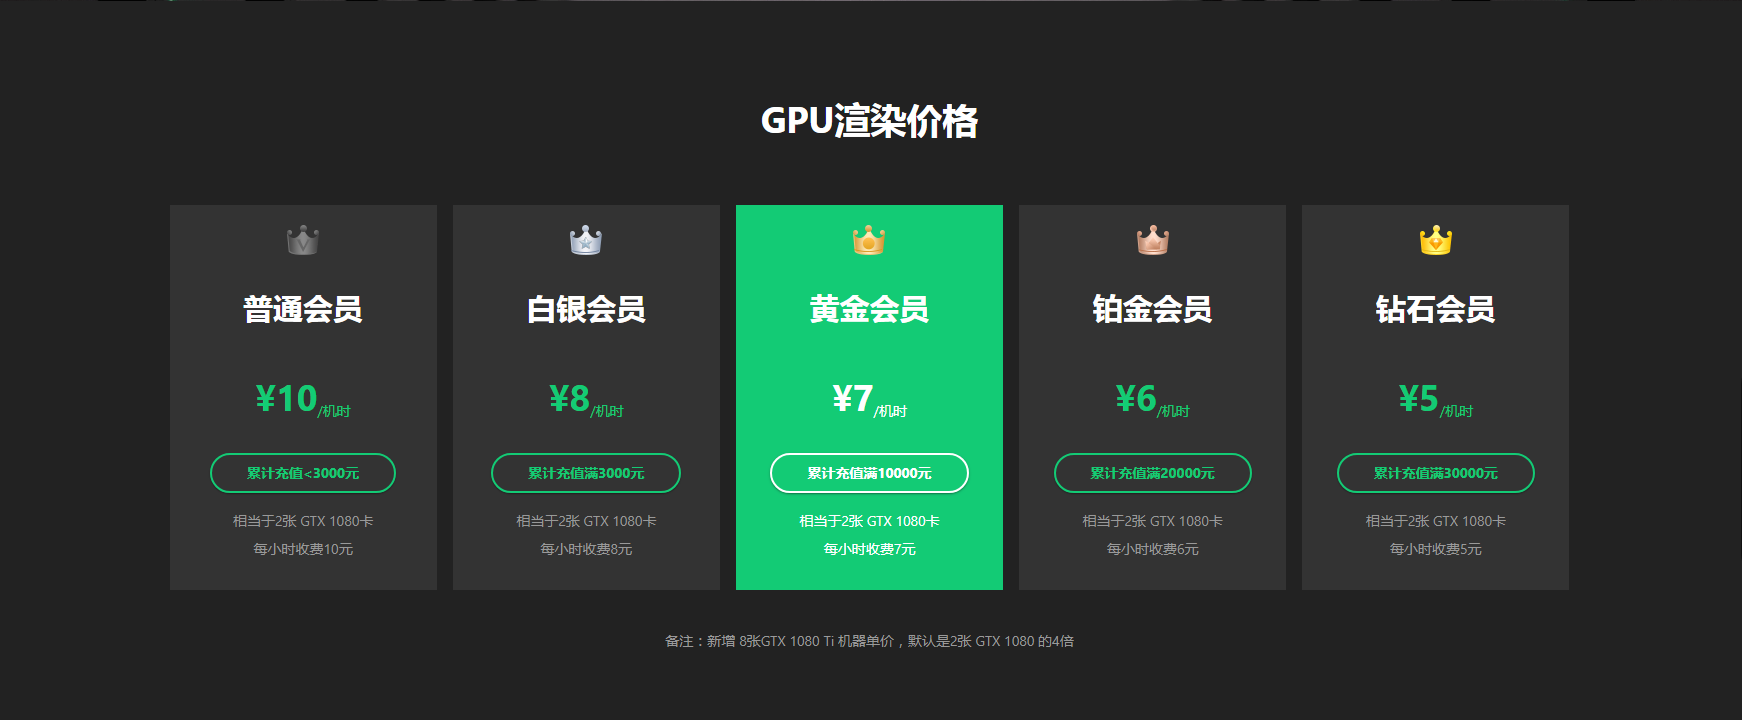 瑞云渲染GPU渲染价格